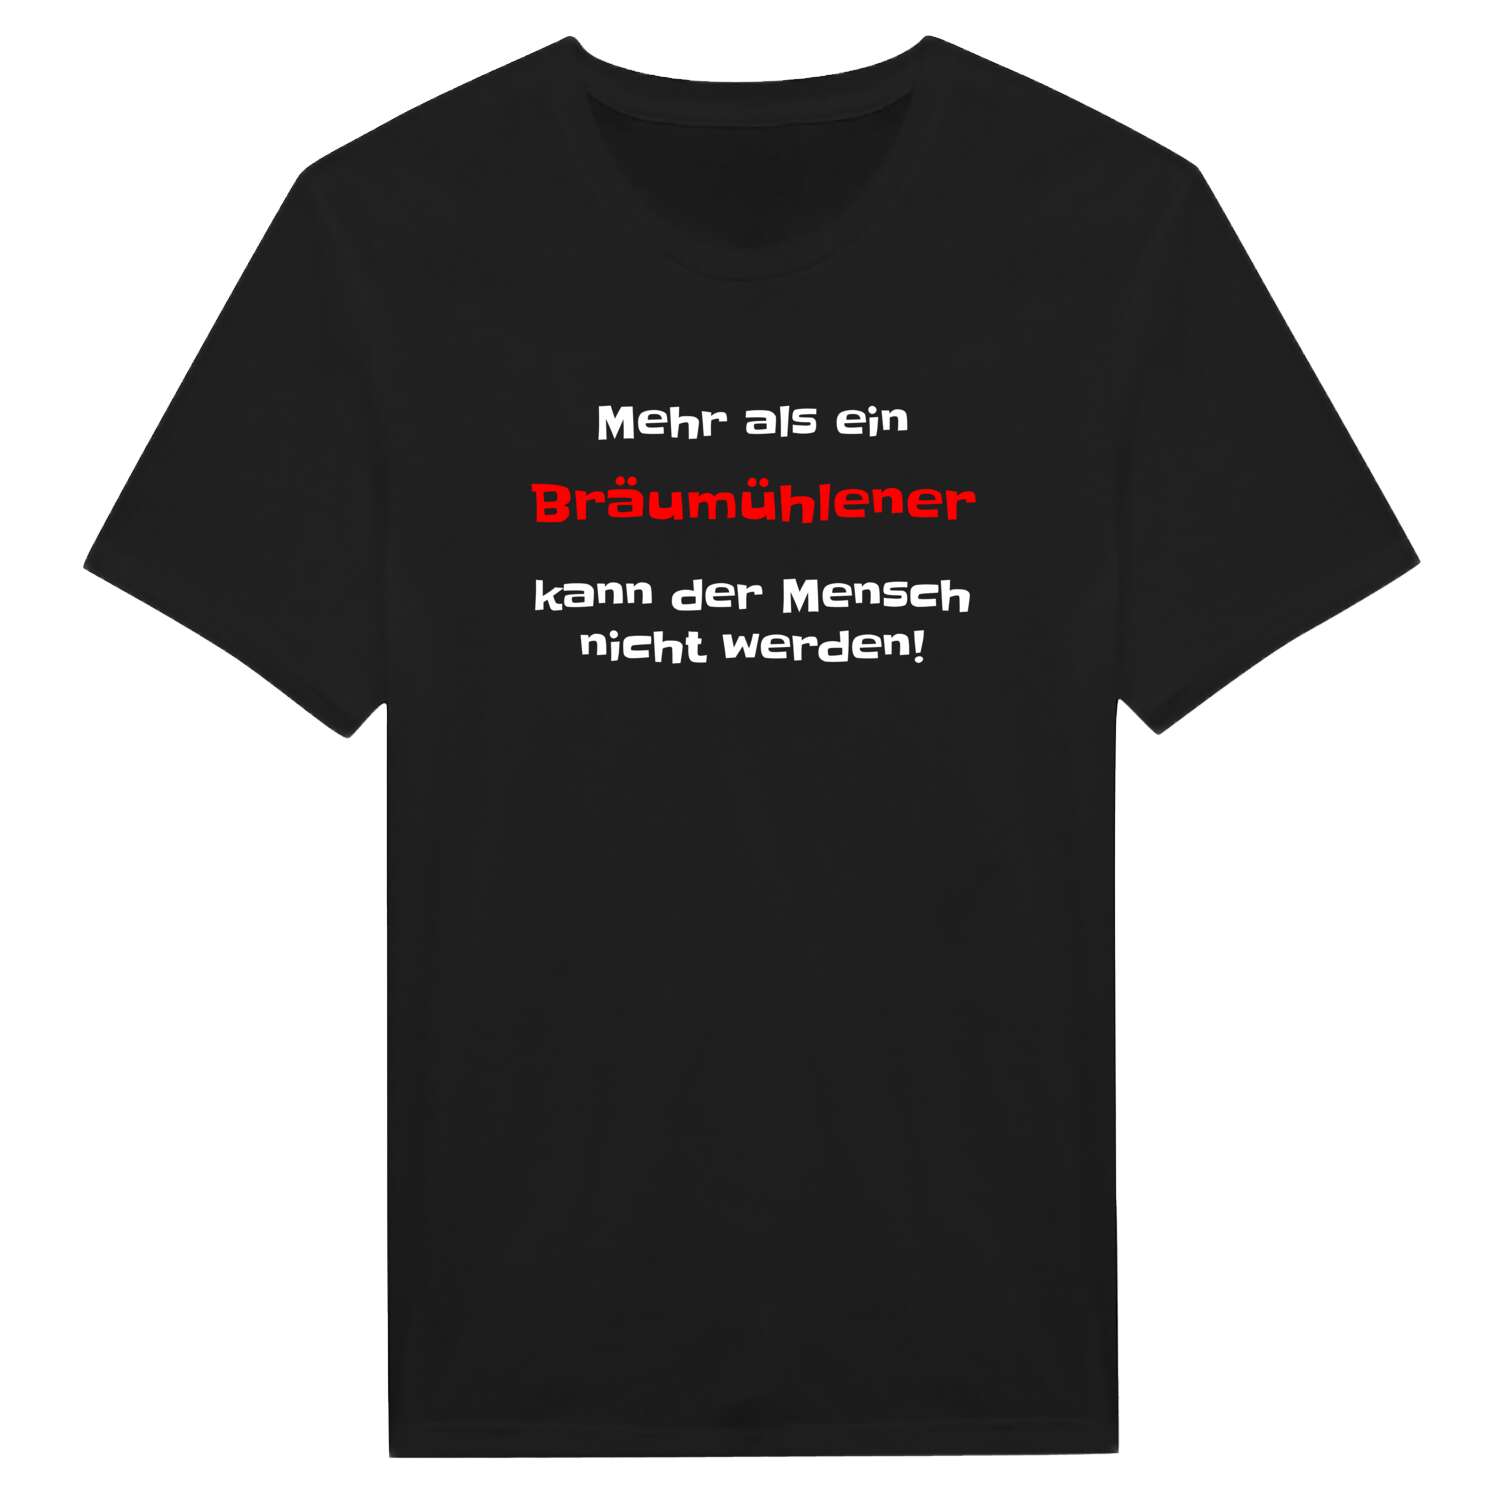 Bräumühle T-Shirt »Mehr als ein«